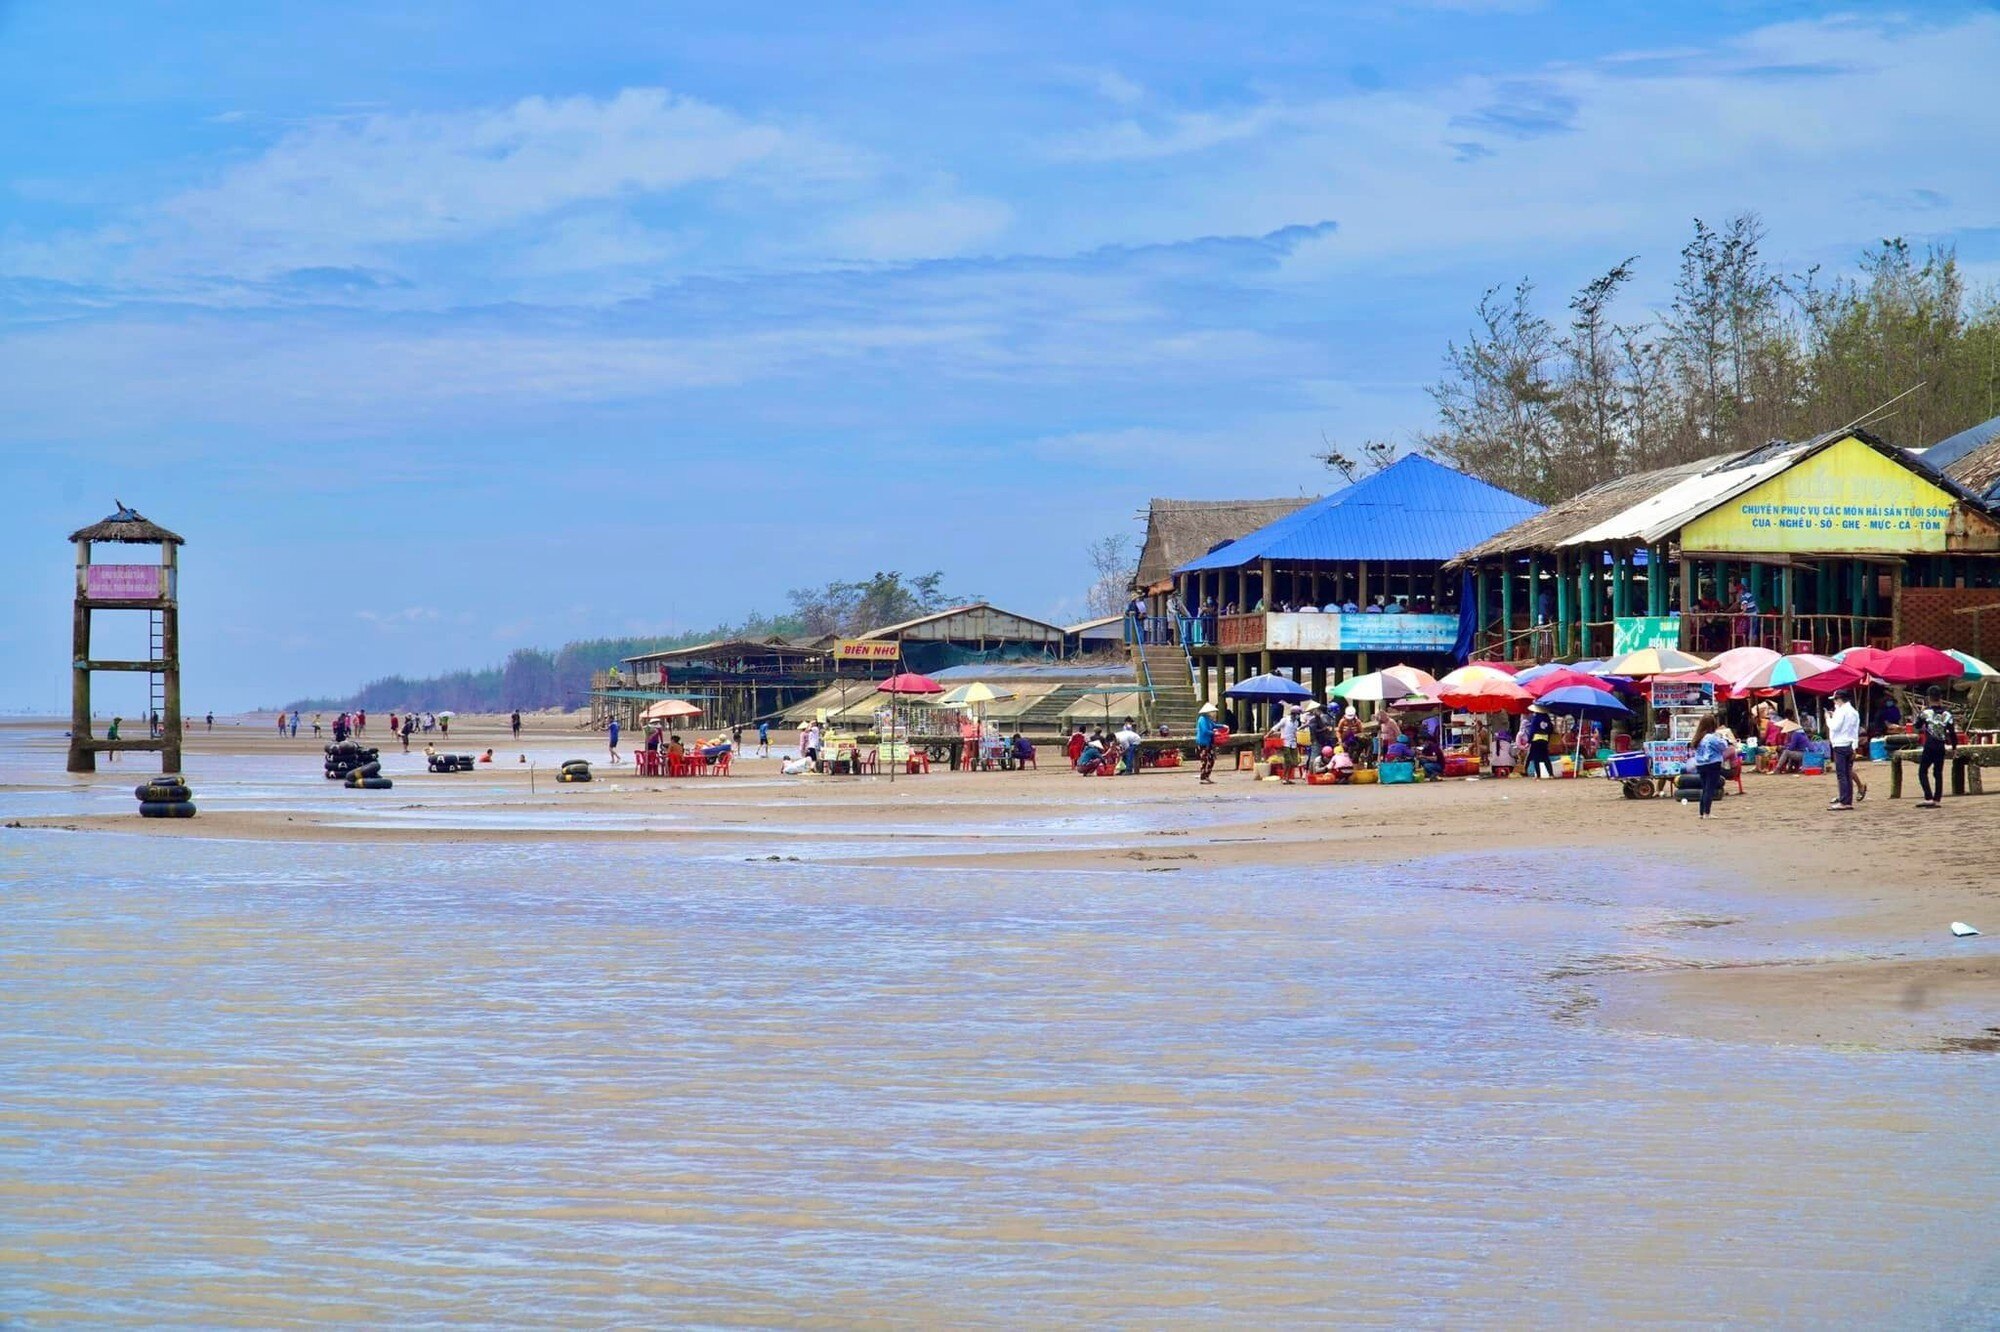 Chợ biển ở một huyện của Bến Tre họp ngay mép sóng, mua bán la liệt tôm, cua, cá, ốc ngon, lạ mắt- Ảnh 2.